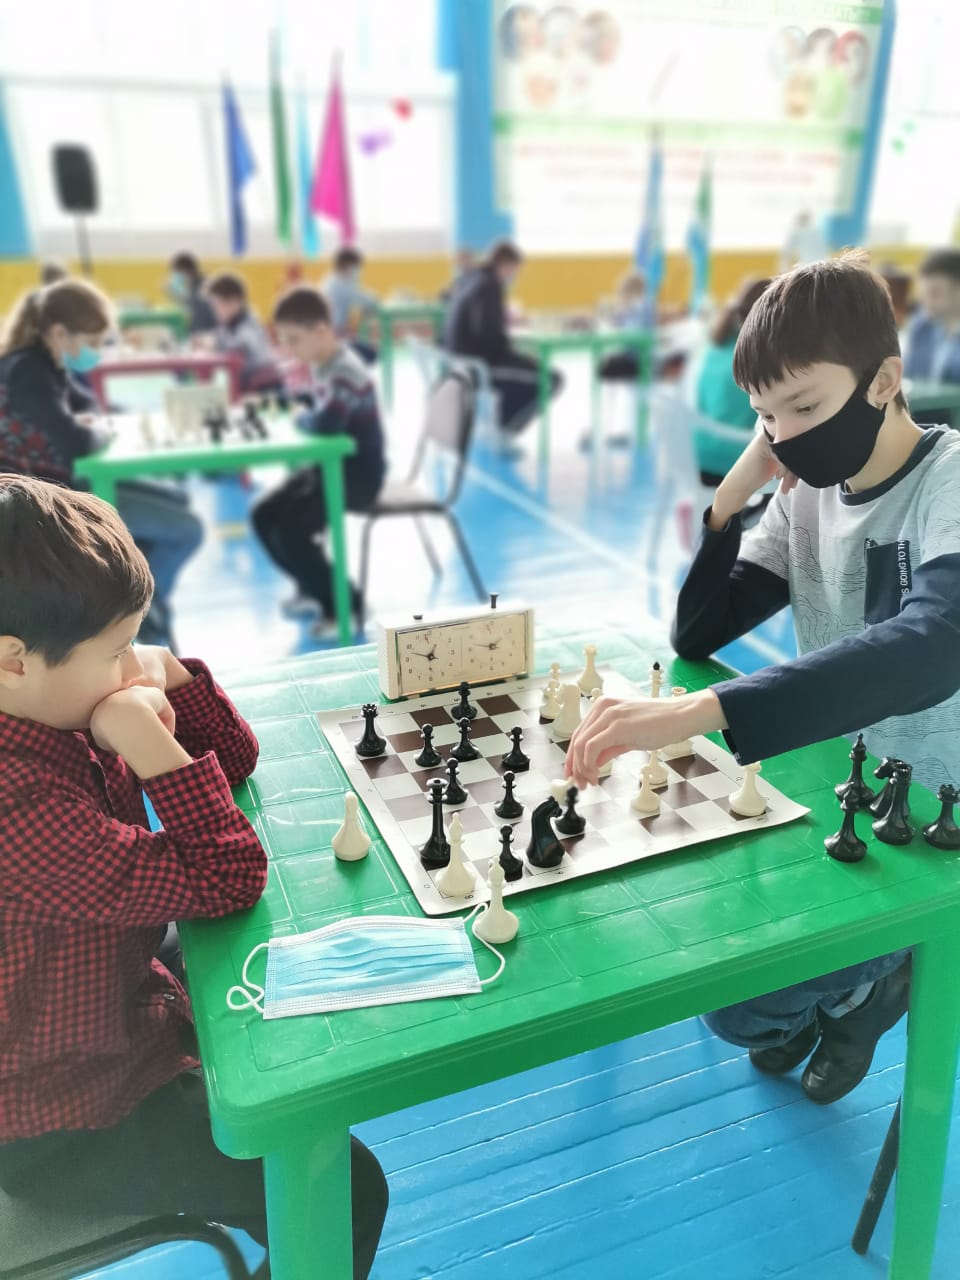 Первый районный турнир по шахматам прошел в Вихоревке